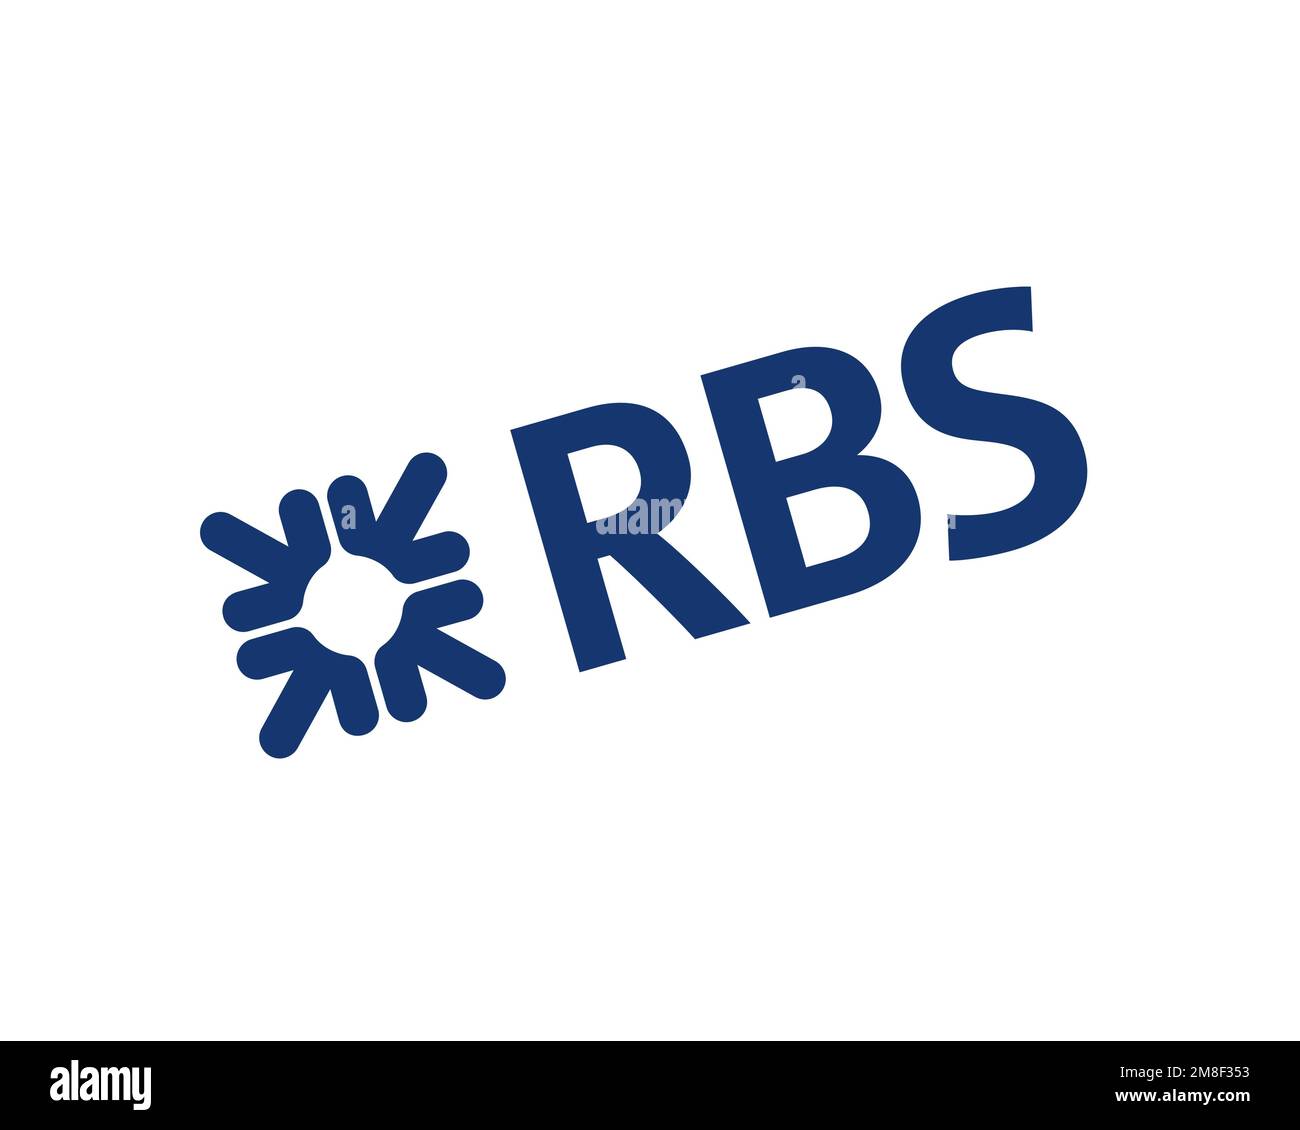 Royal Bank of Scotland Group, logo pivoté, fond blanc Banque D'Images